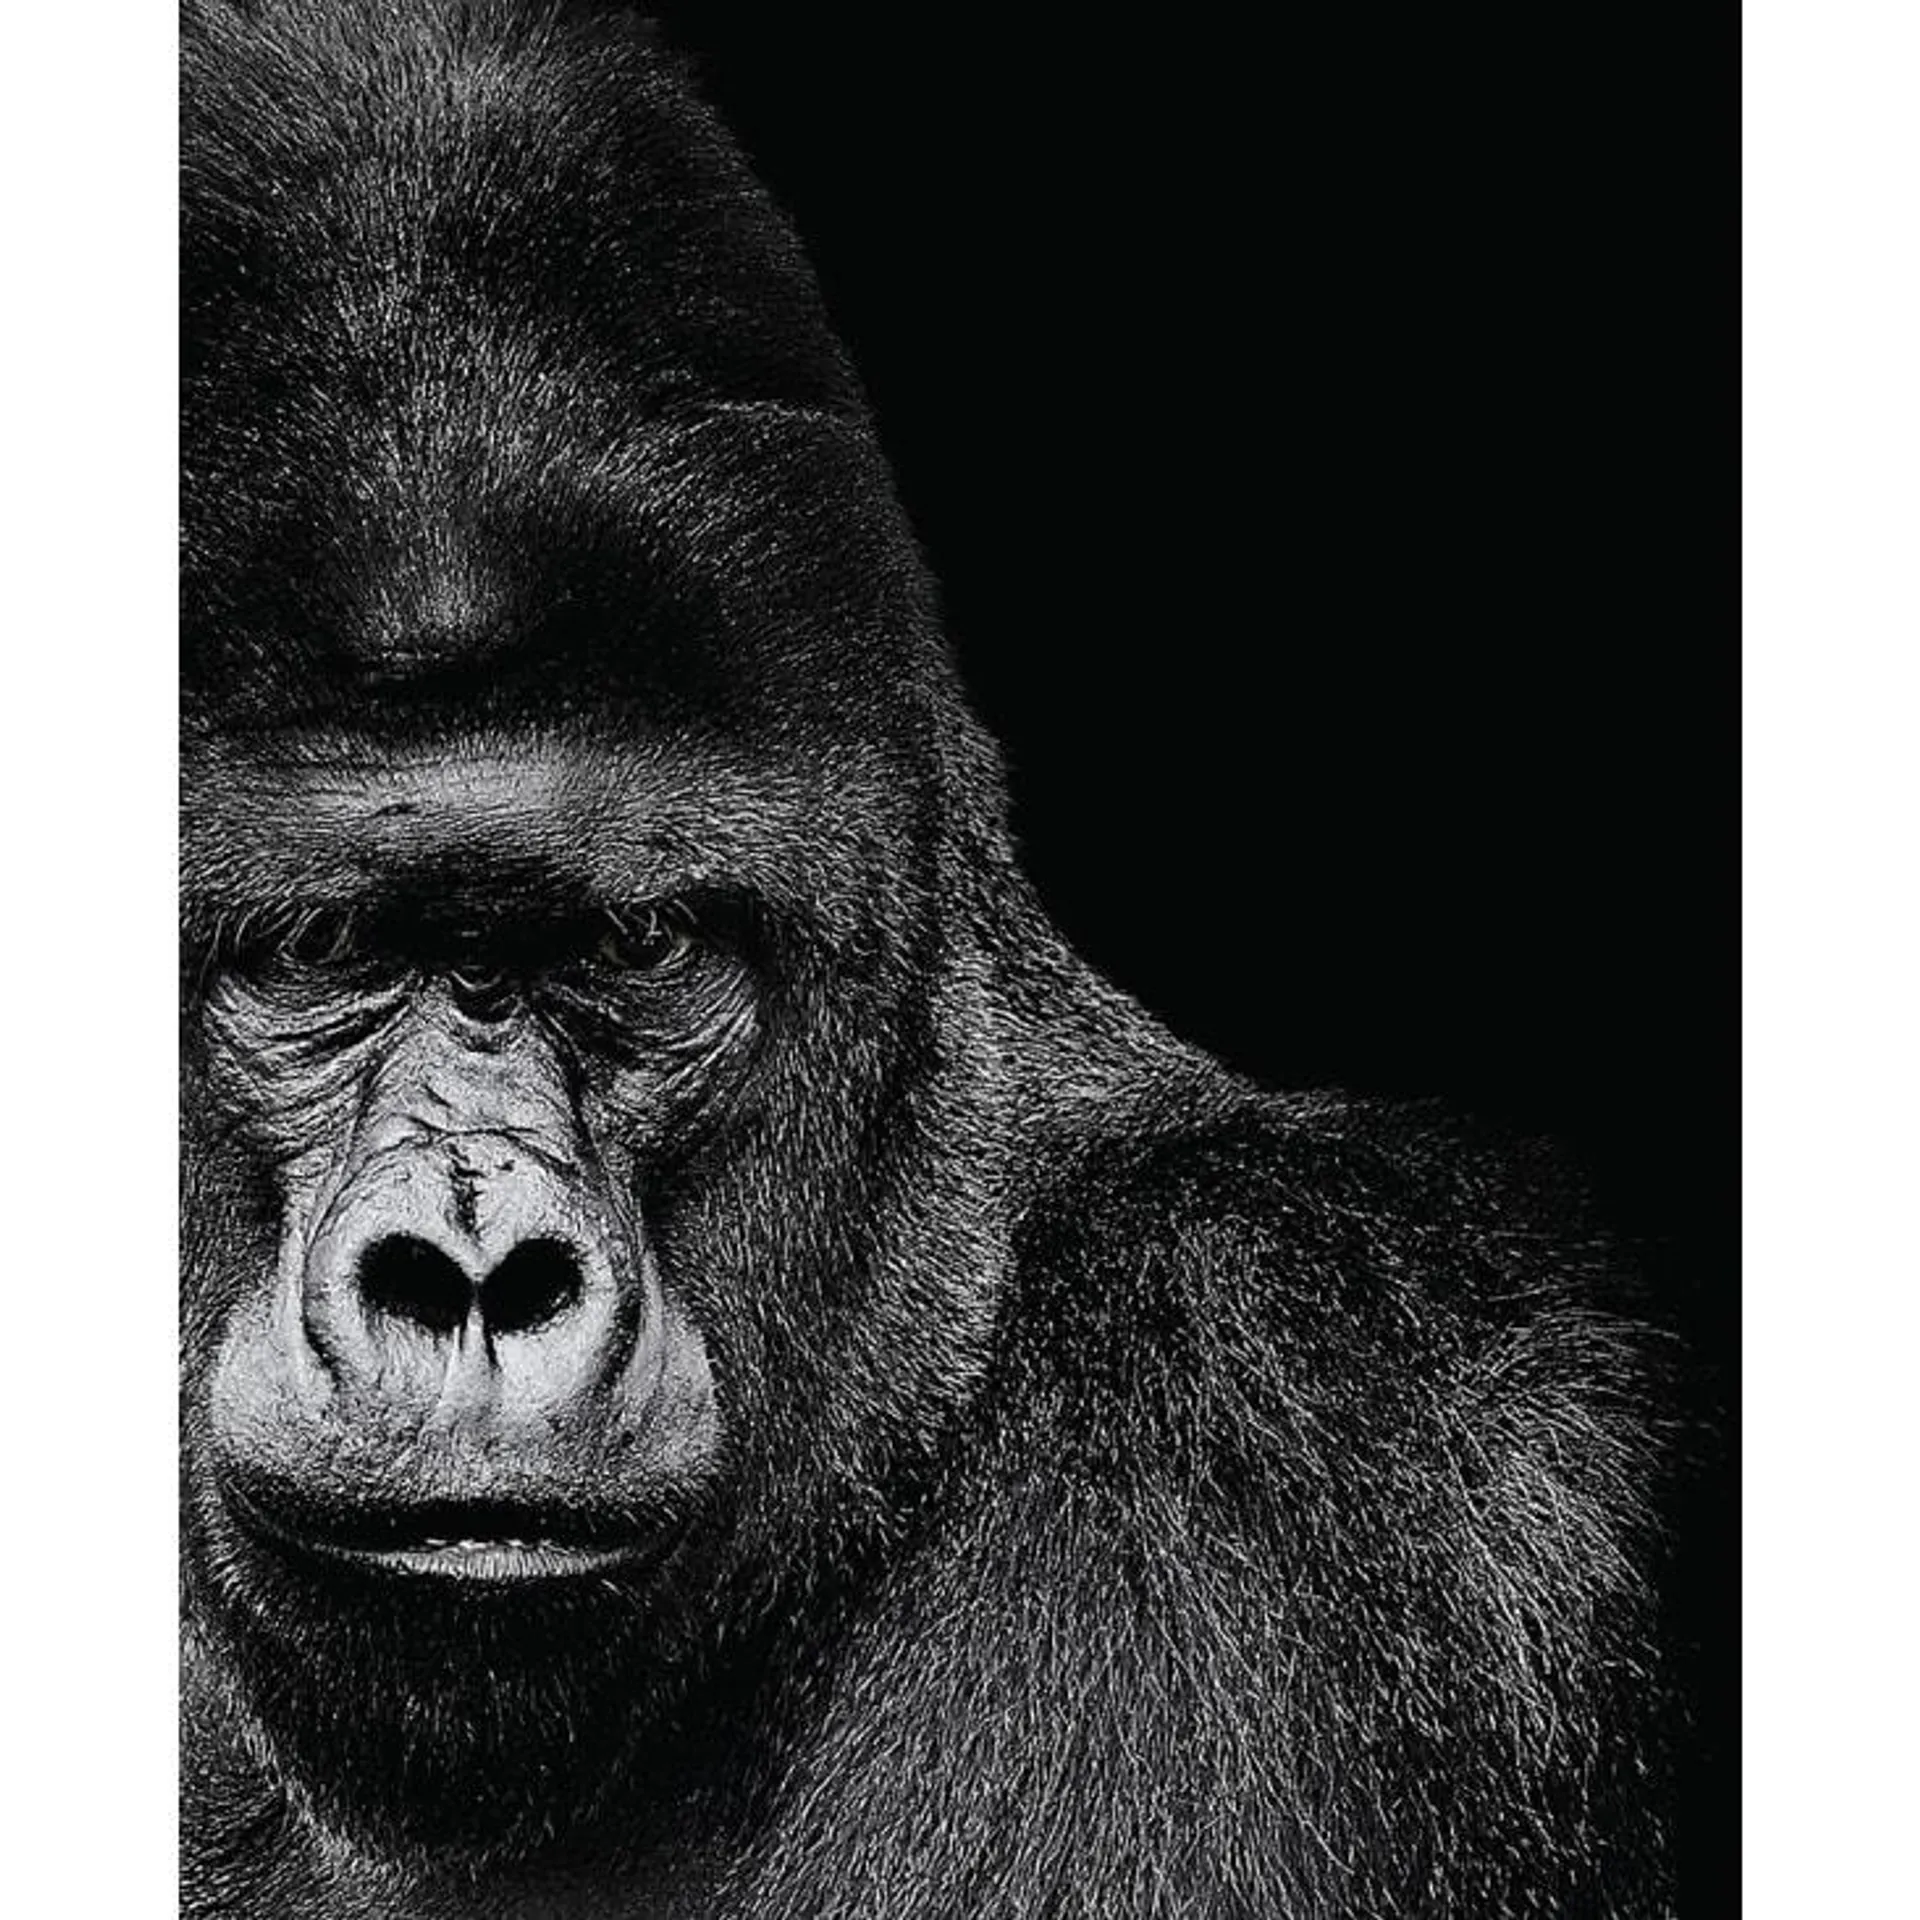 Stampa Gorilla in bianco e nero 40x50